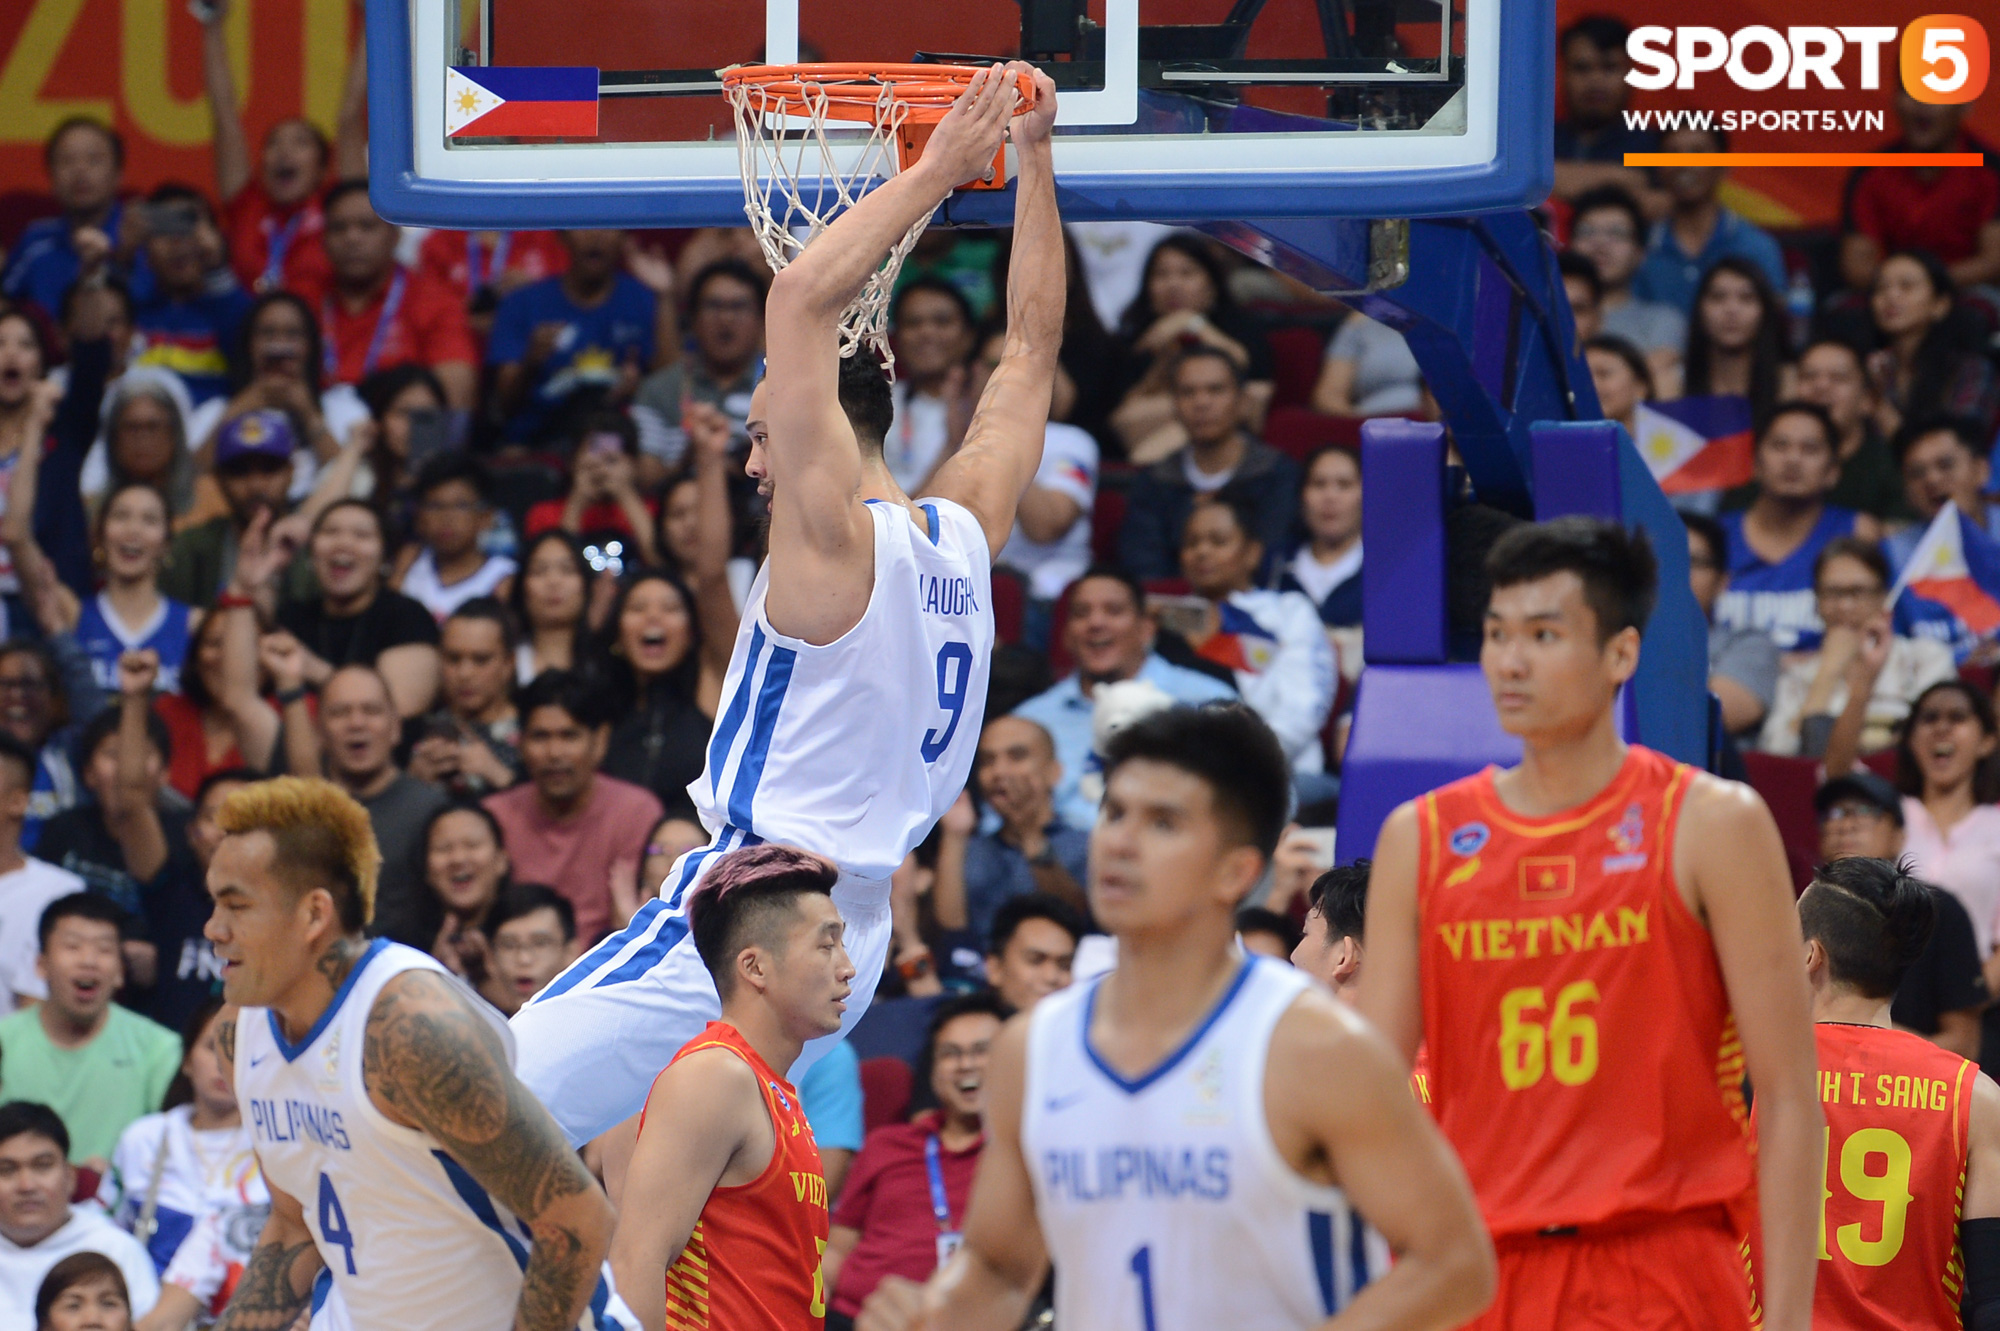 Choáng ngợp trước vẻ hào nhoáng của nhà thi đấu và sức ép từ 15.000 CĐV chủ nhà Philippines mà tuyển bóng rổ Việt Nam phải đối mặt - Ảnh 9.